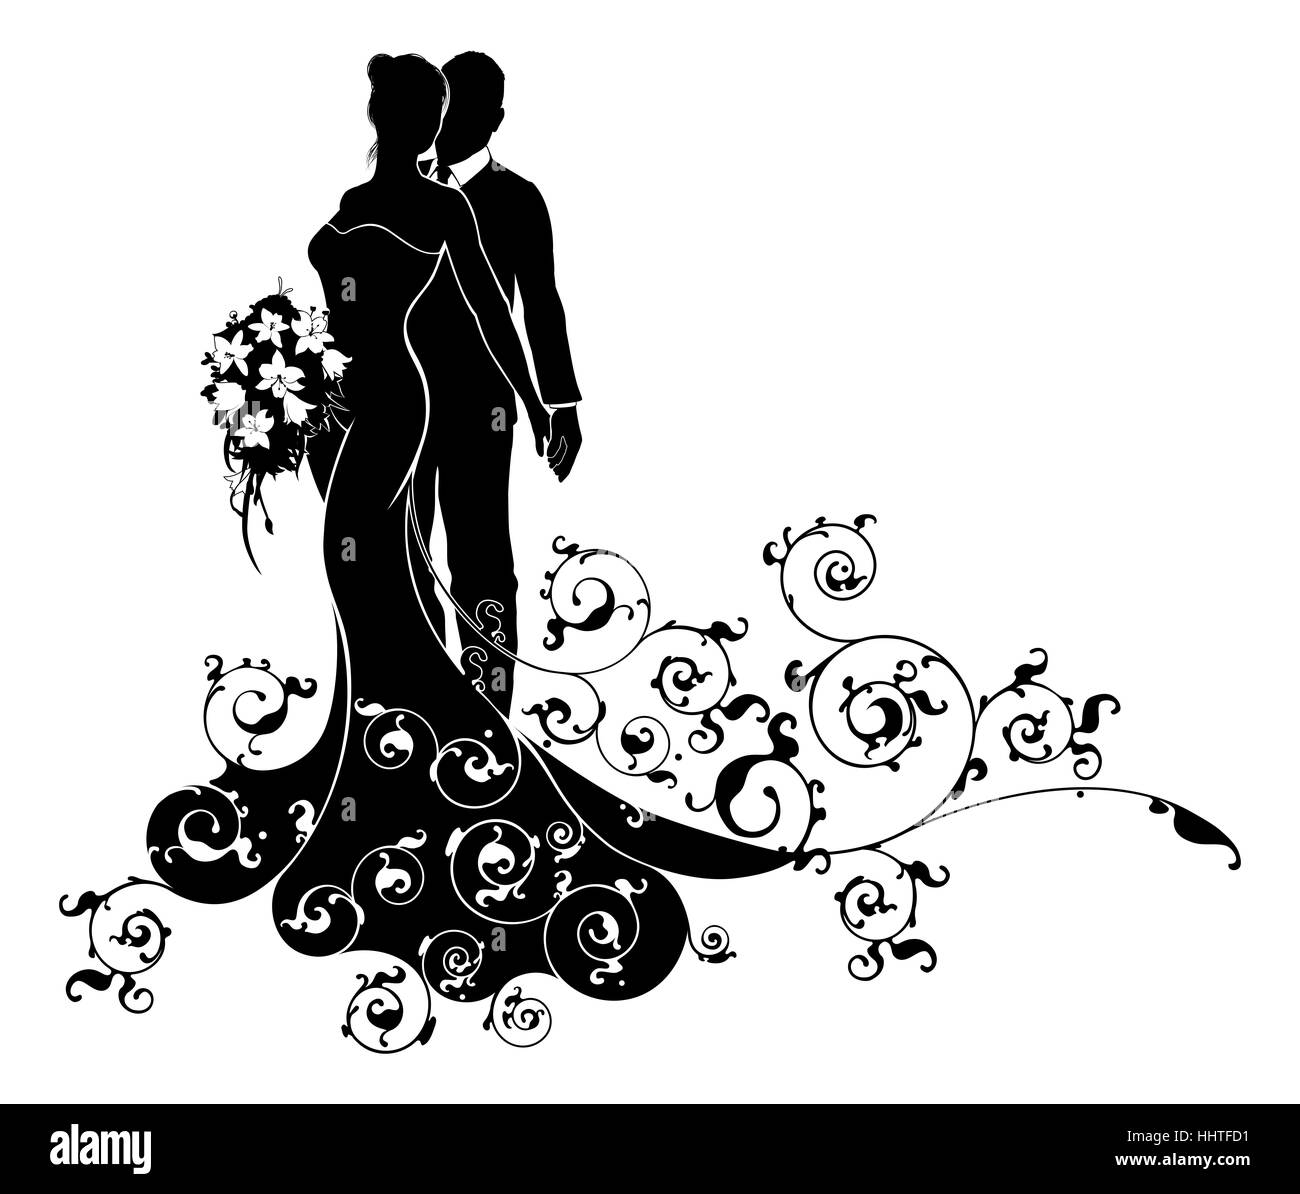 Eine Braut und Bräutigam Brautpaar Silhouette mit der Braut in einer Braut Kleid Brautkleid hält einen Blumenstrauß der Blumen und eine abstrakte flora Stockfoto